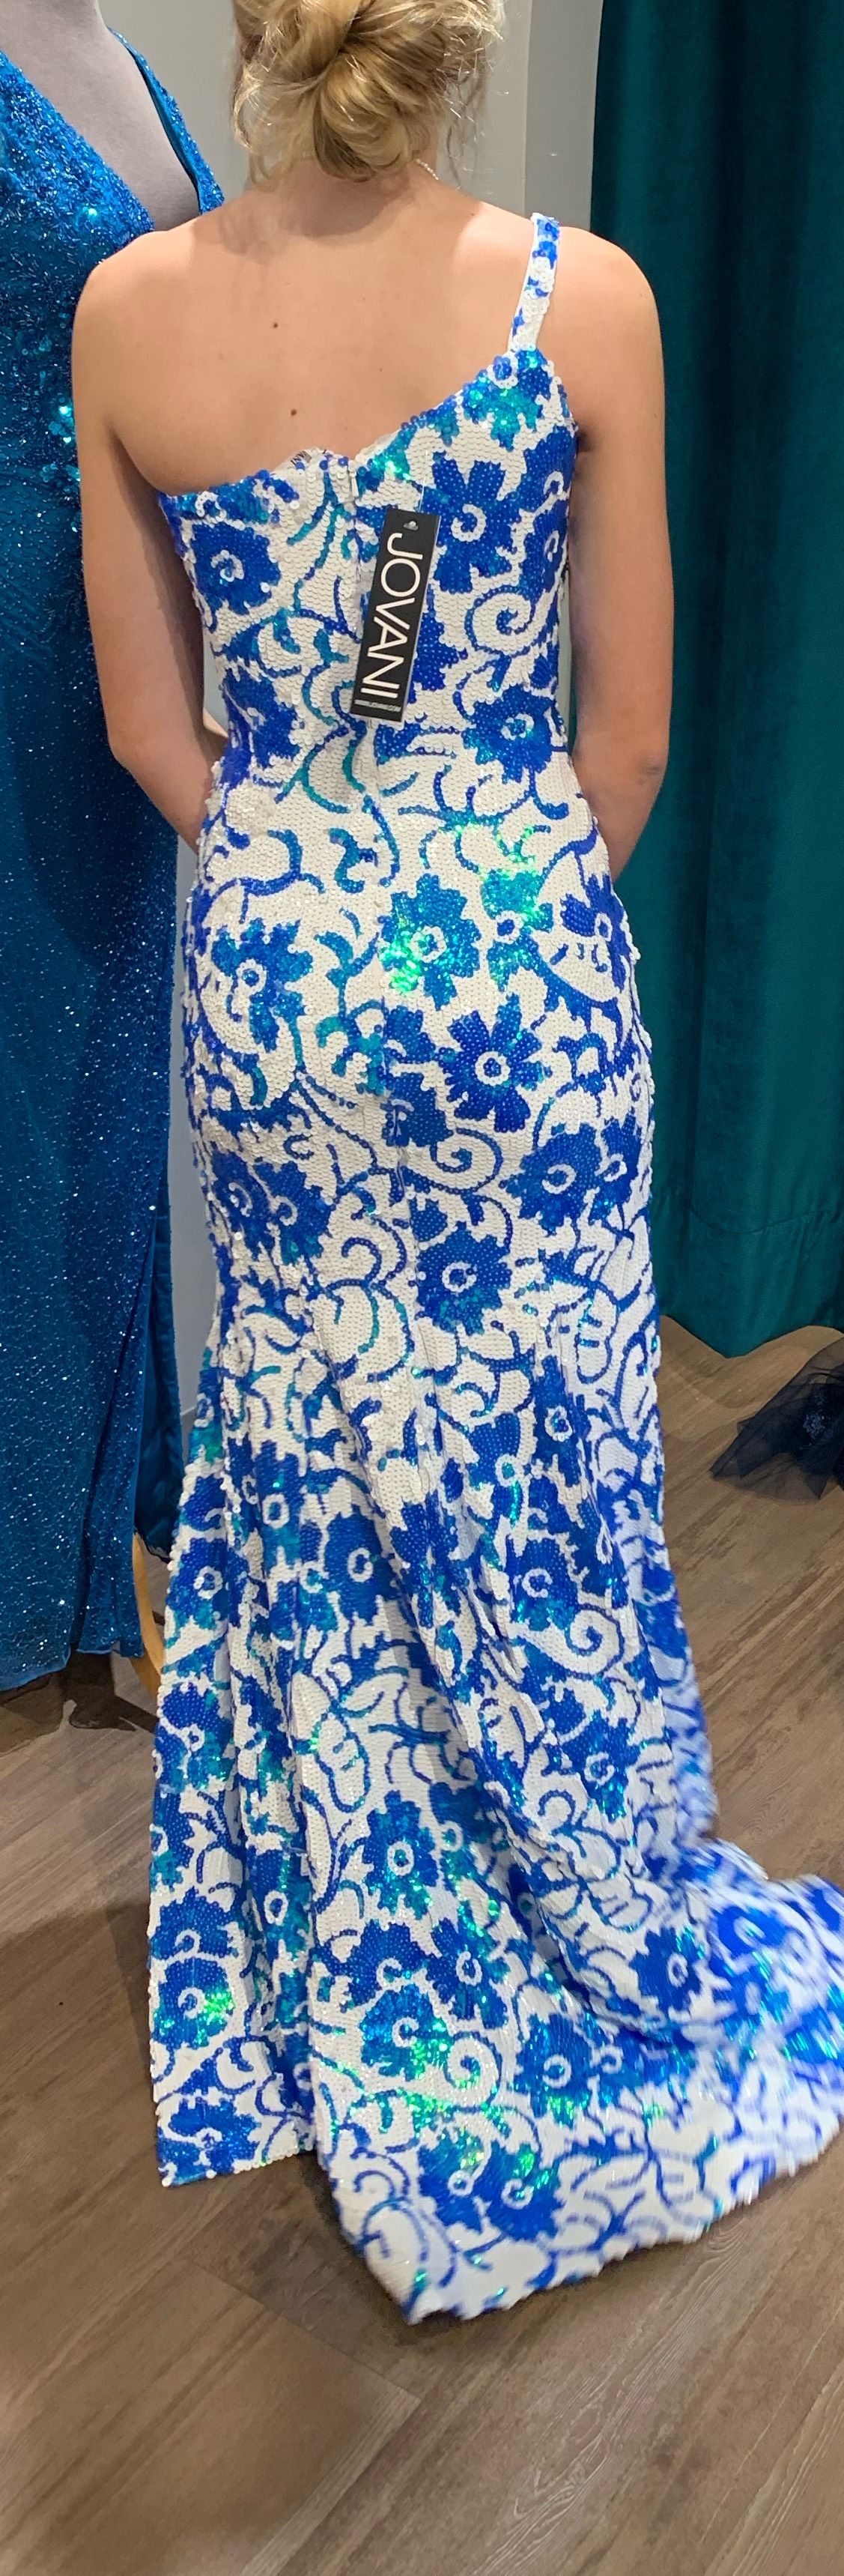 Jovani Size 2 Prom One Shoulder Multicolor Side Slit Dress on Queenly